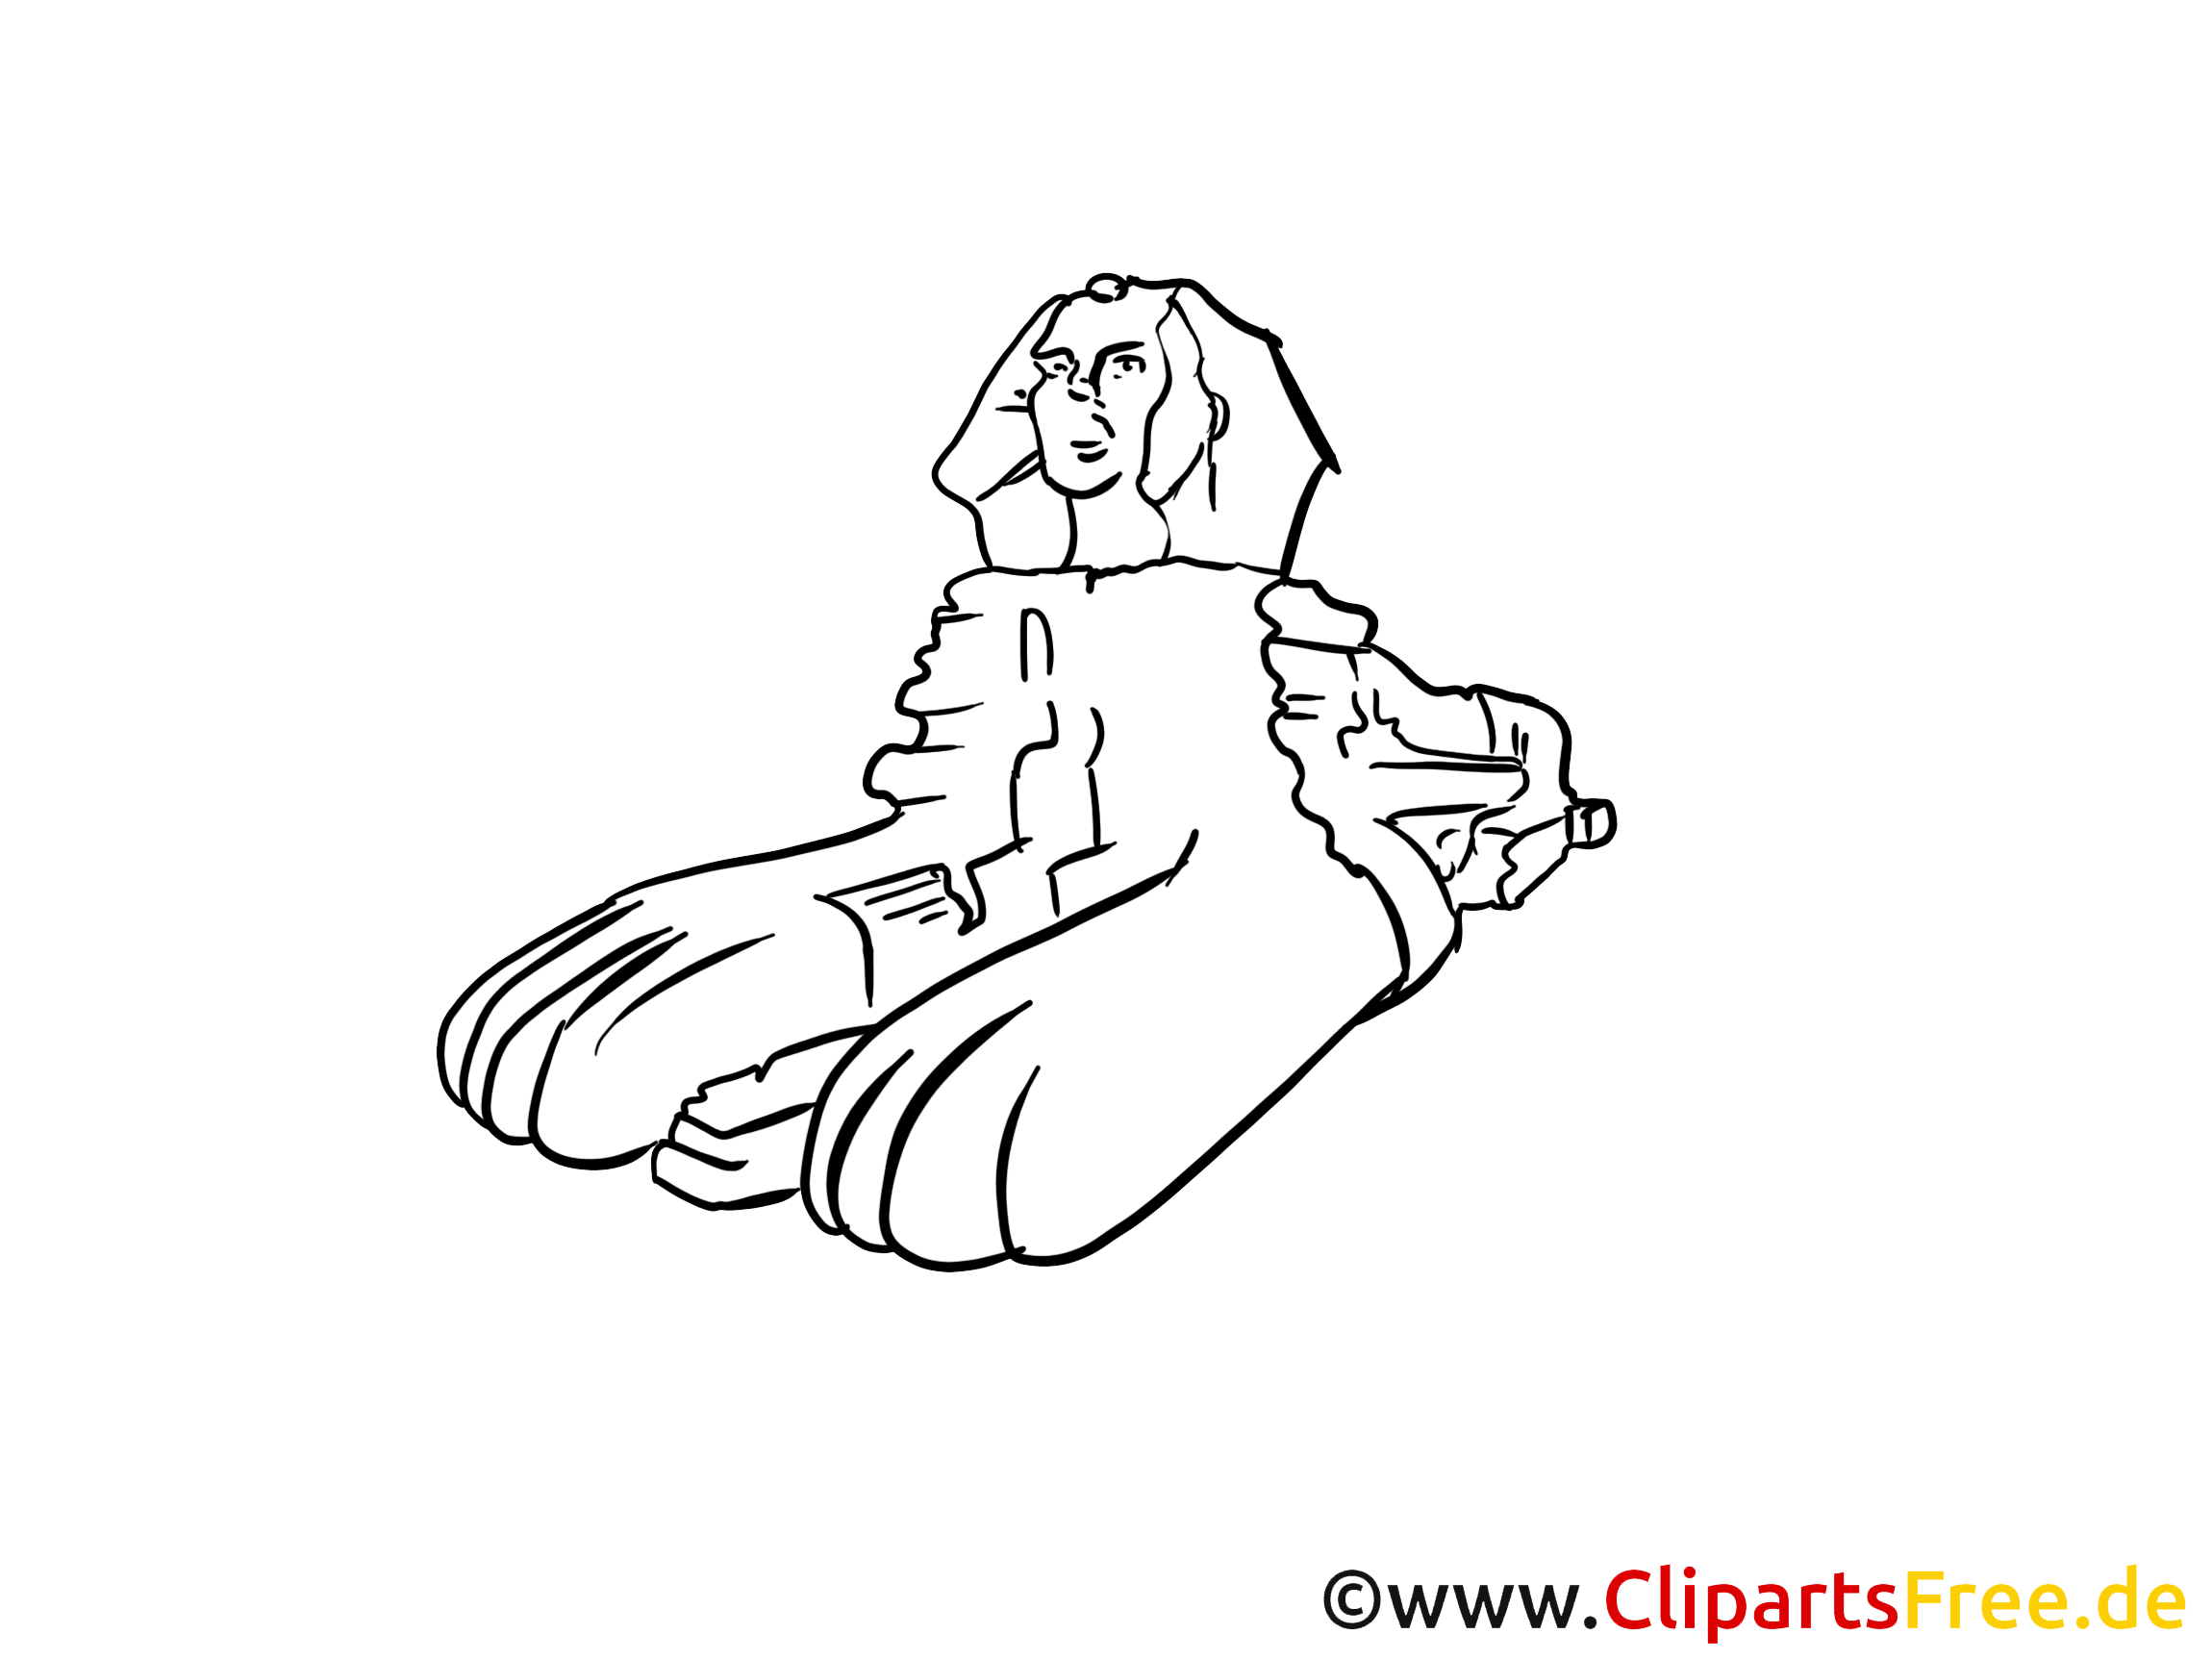 Sphinx images - Egypte dessins gratuits